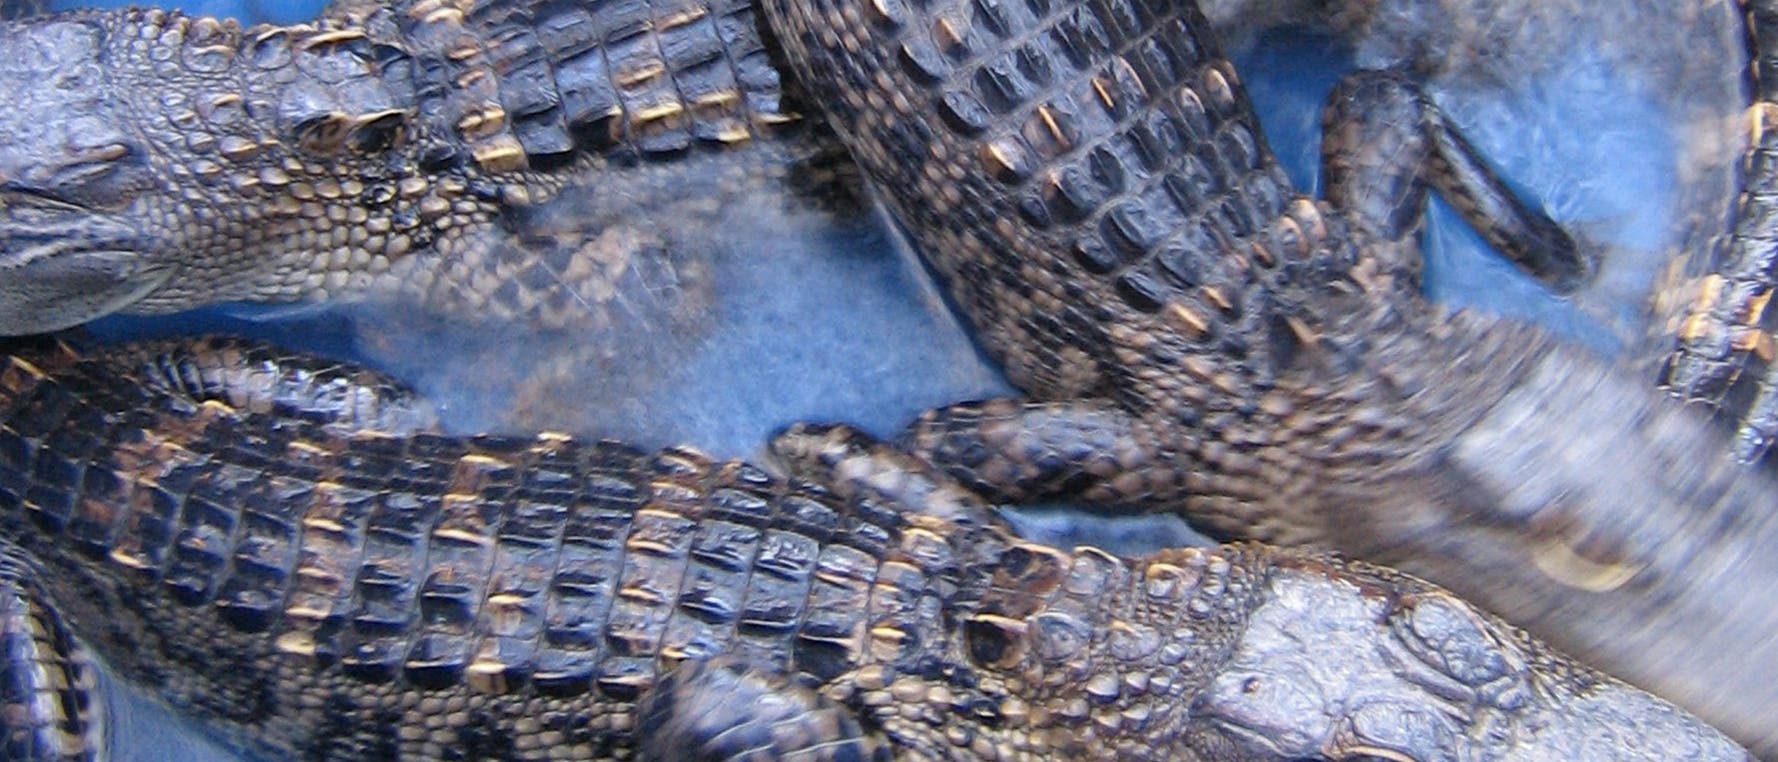 Junge Alligatoren 